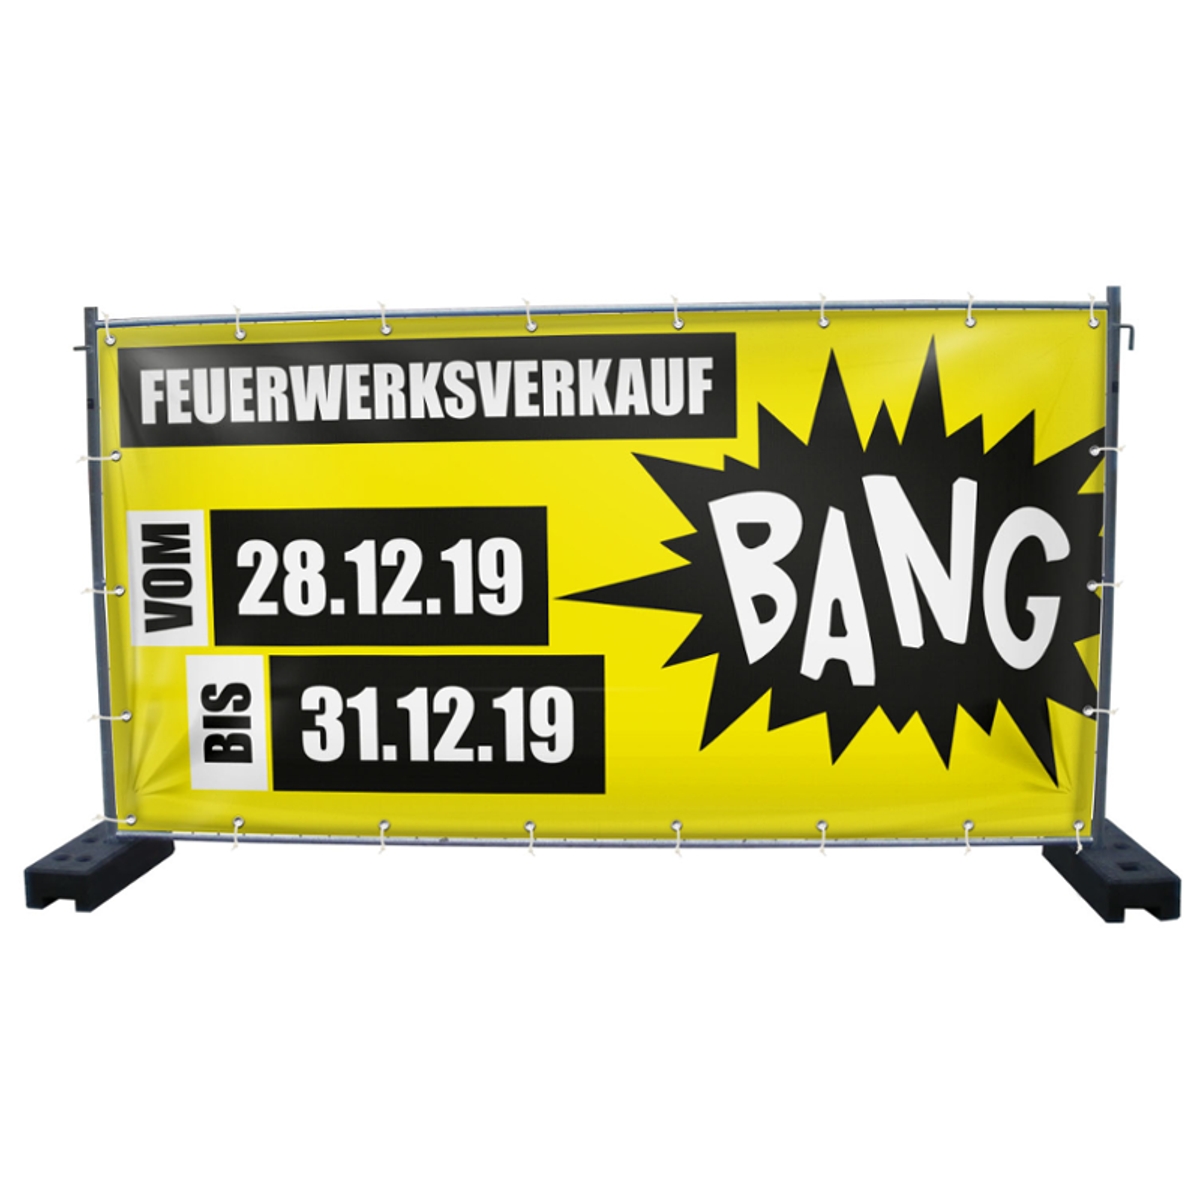 340 x 173 cm | Feuerwerksverkauf Bauzaunbanner (2164)